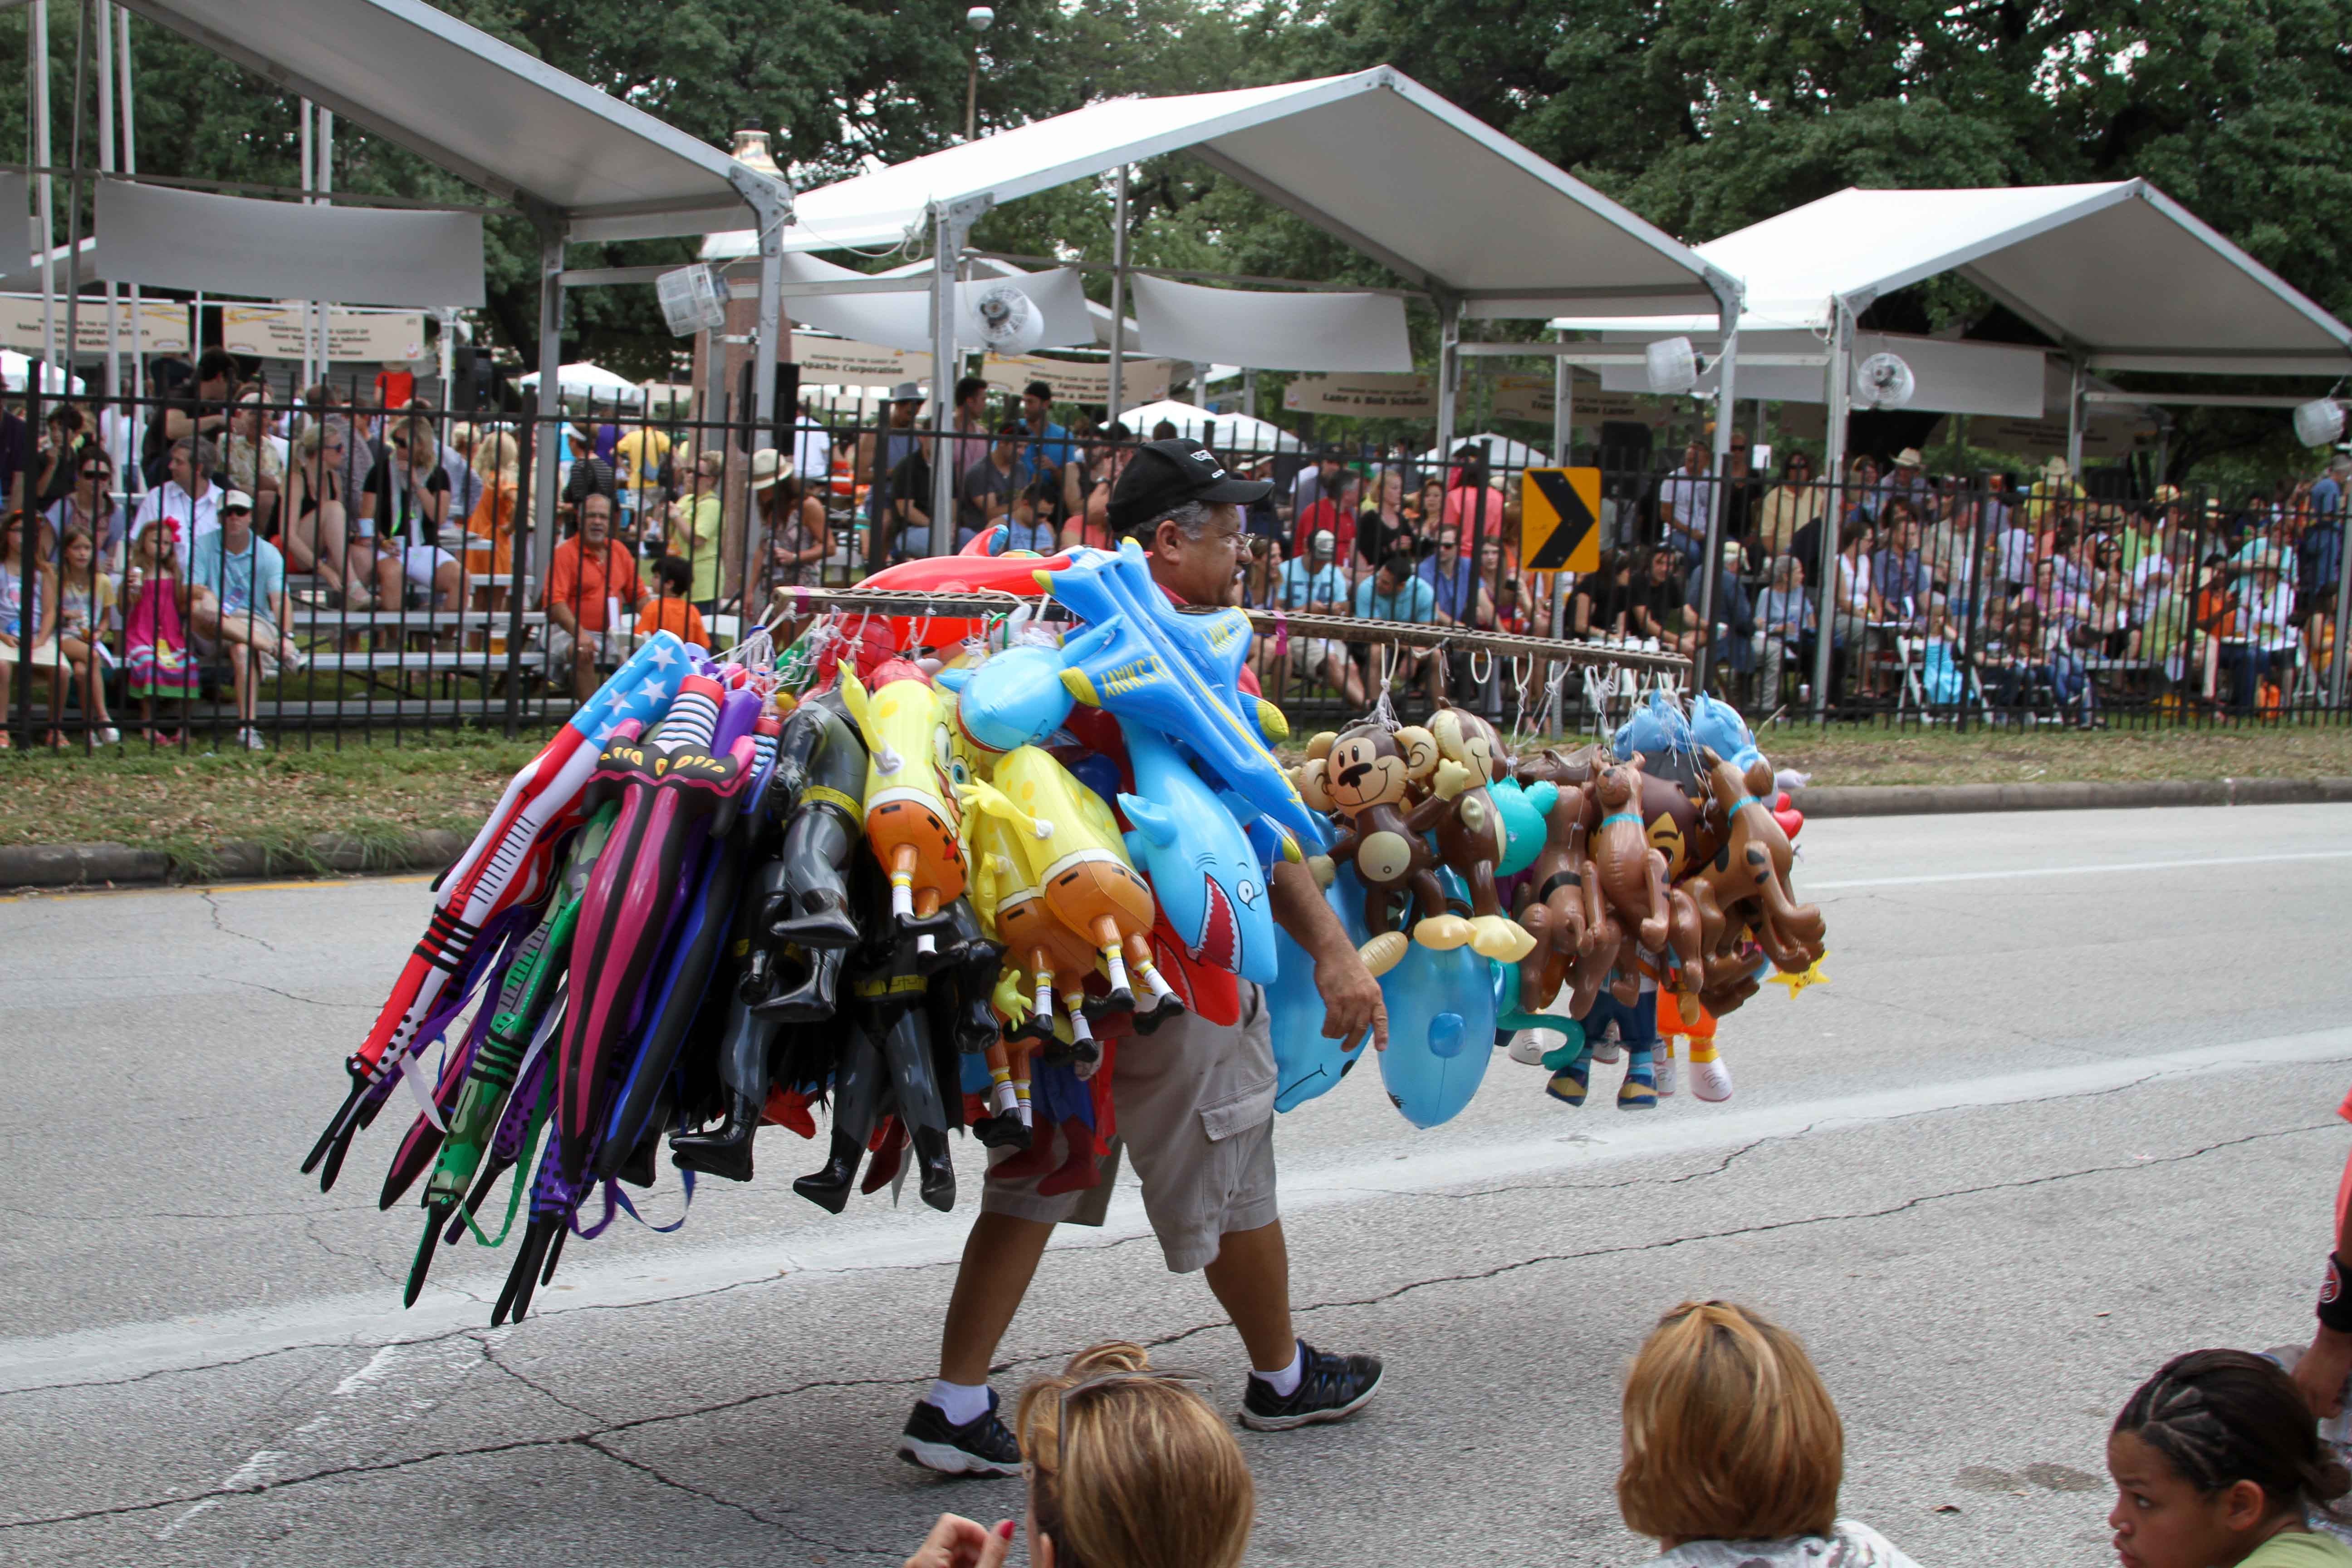 Houston Art Car Parade - 2012